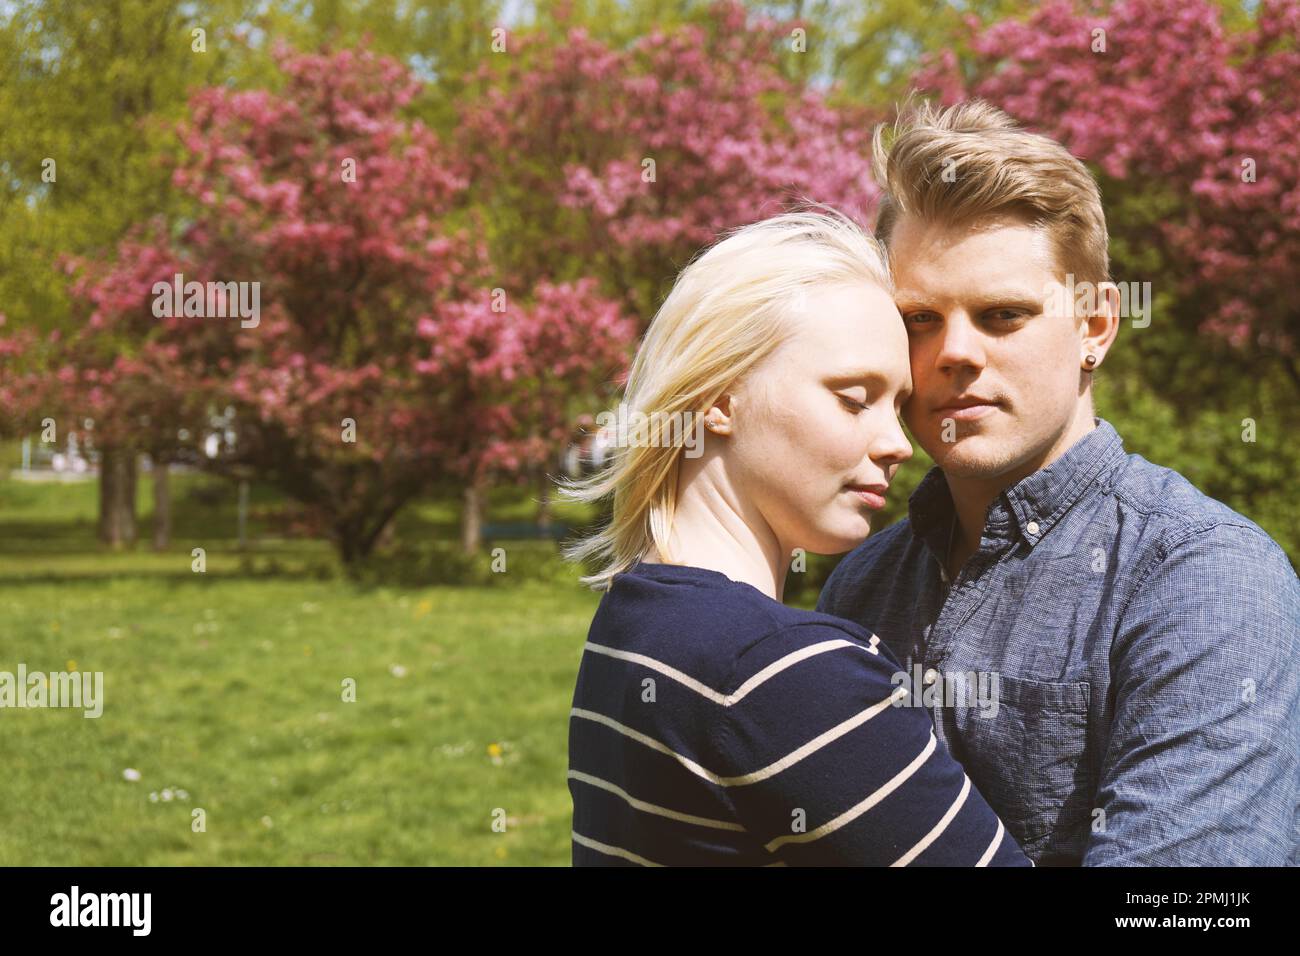 jeune couple amoureux s'embrassant dans la nature pendant la floraison des cerisiers dans le parc Banque D'Images